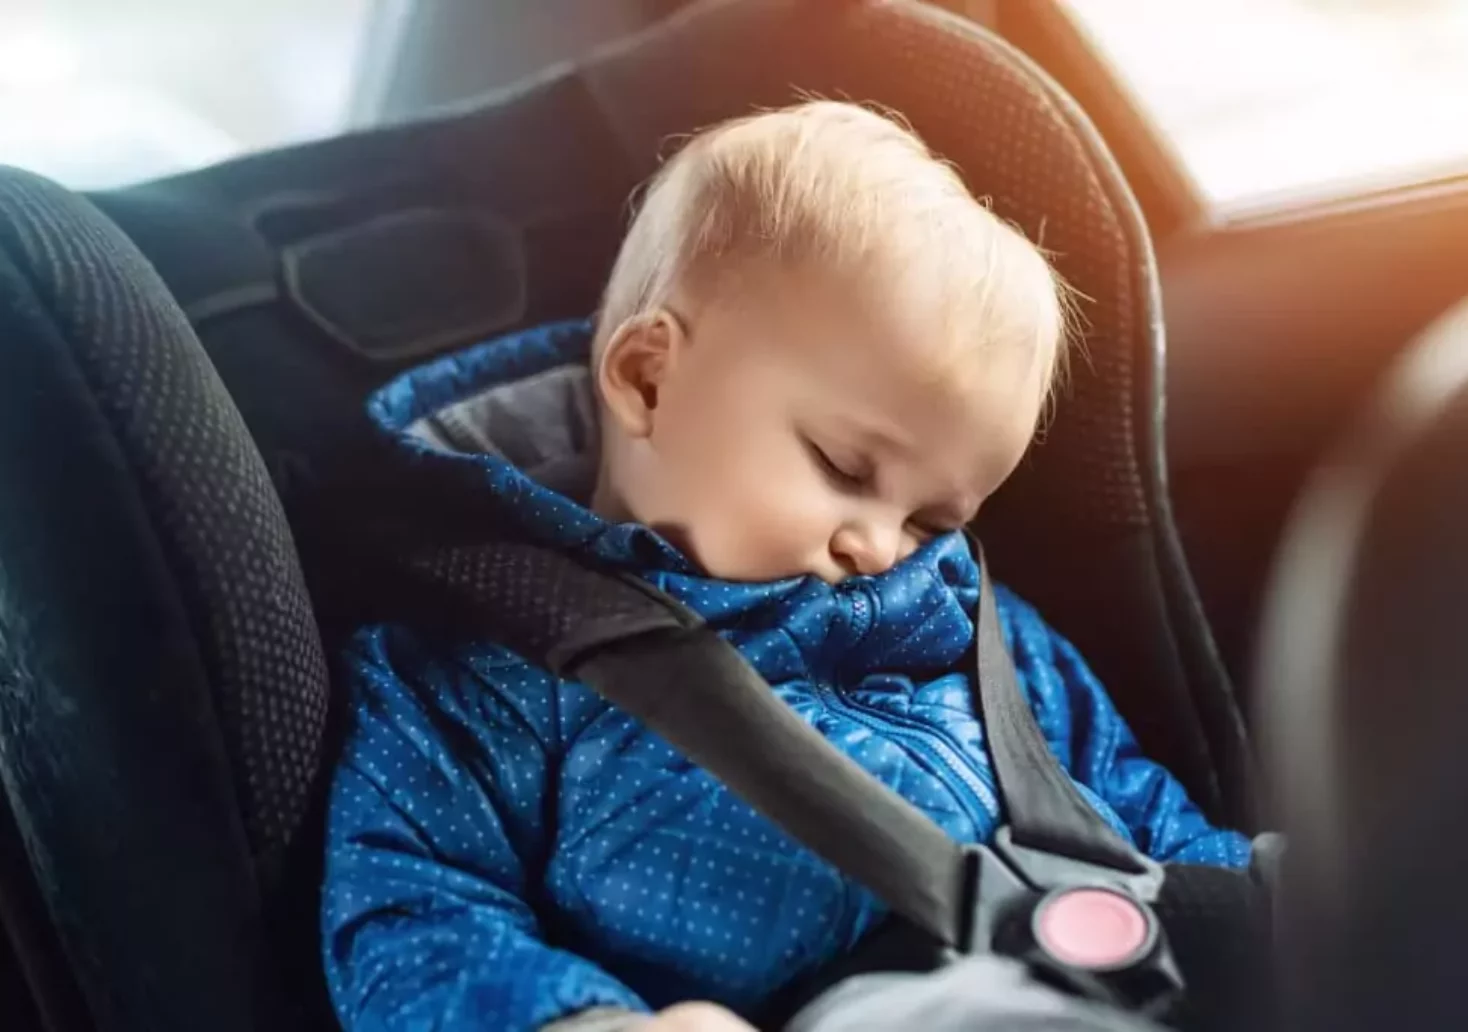 Bild auf 5min.at zeigt ein schlafendes Kind im Auto.